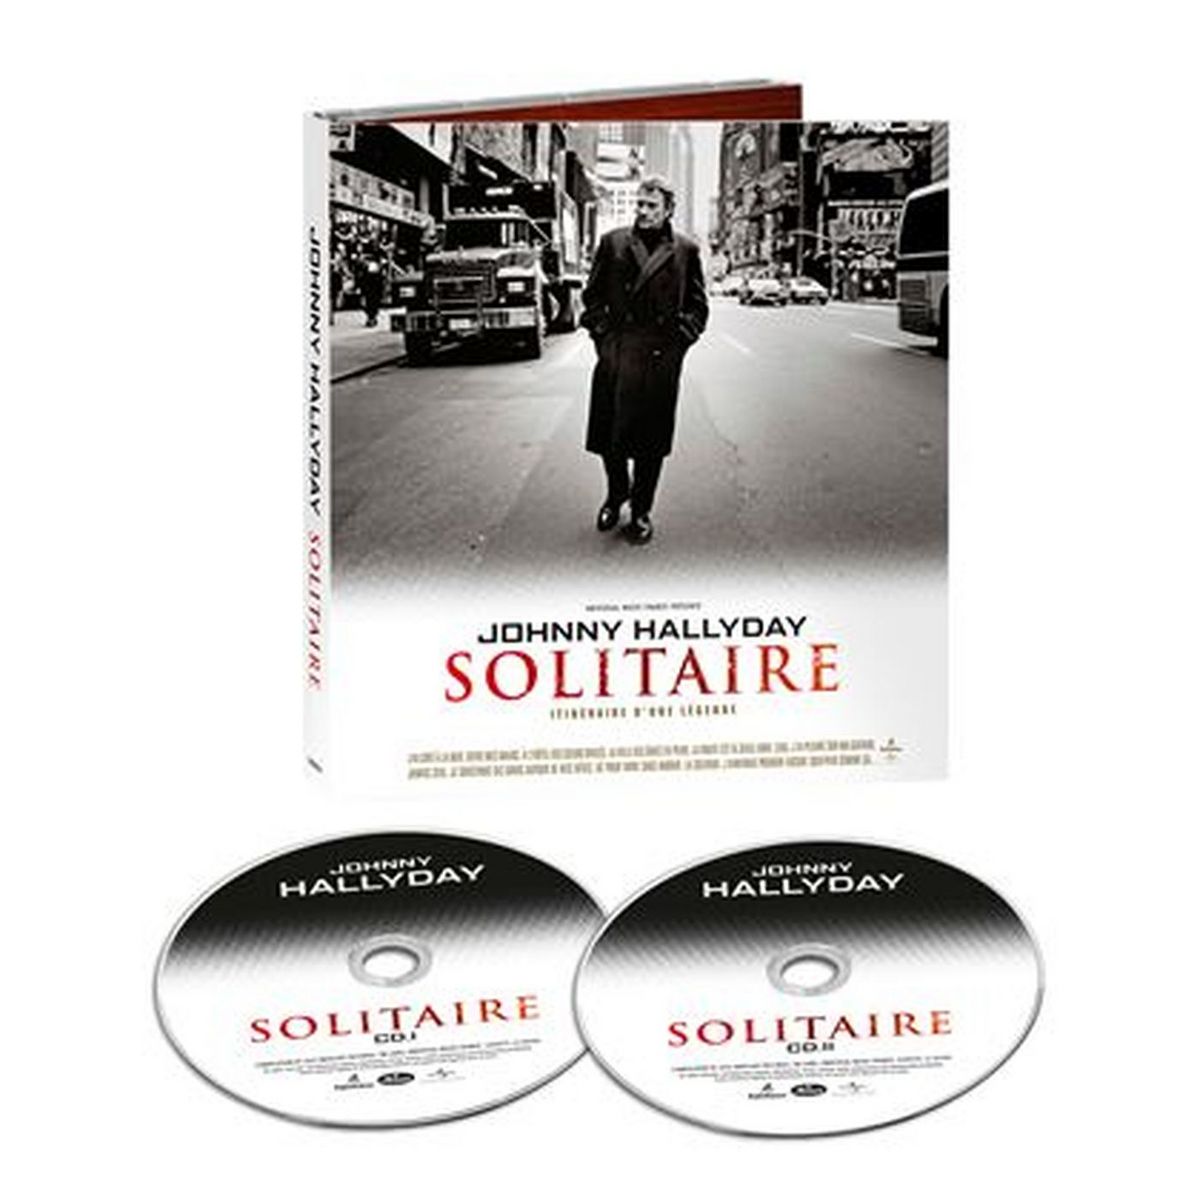 Johnny Hallyday - Solitaire édition limitée CD